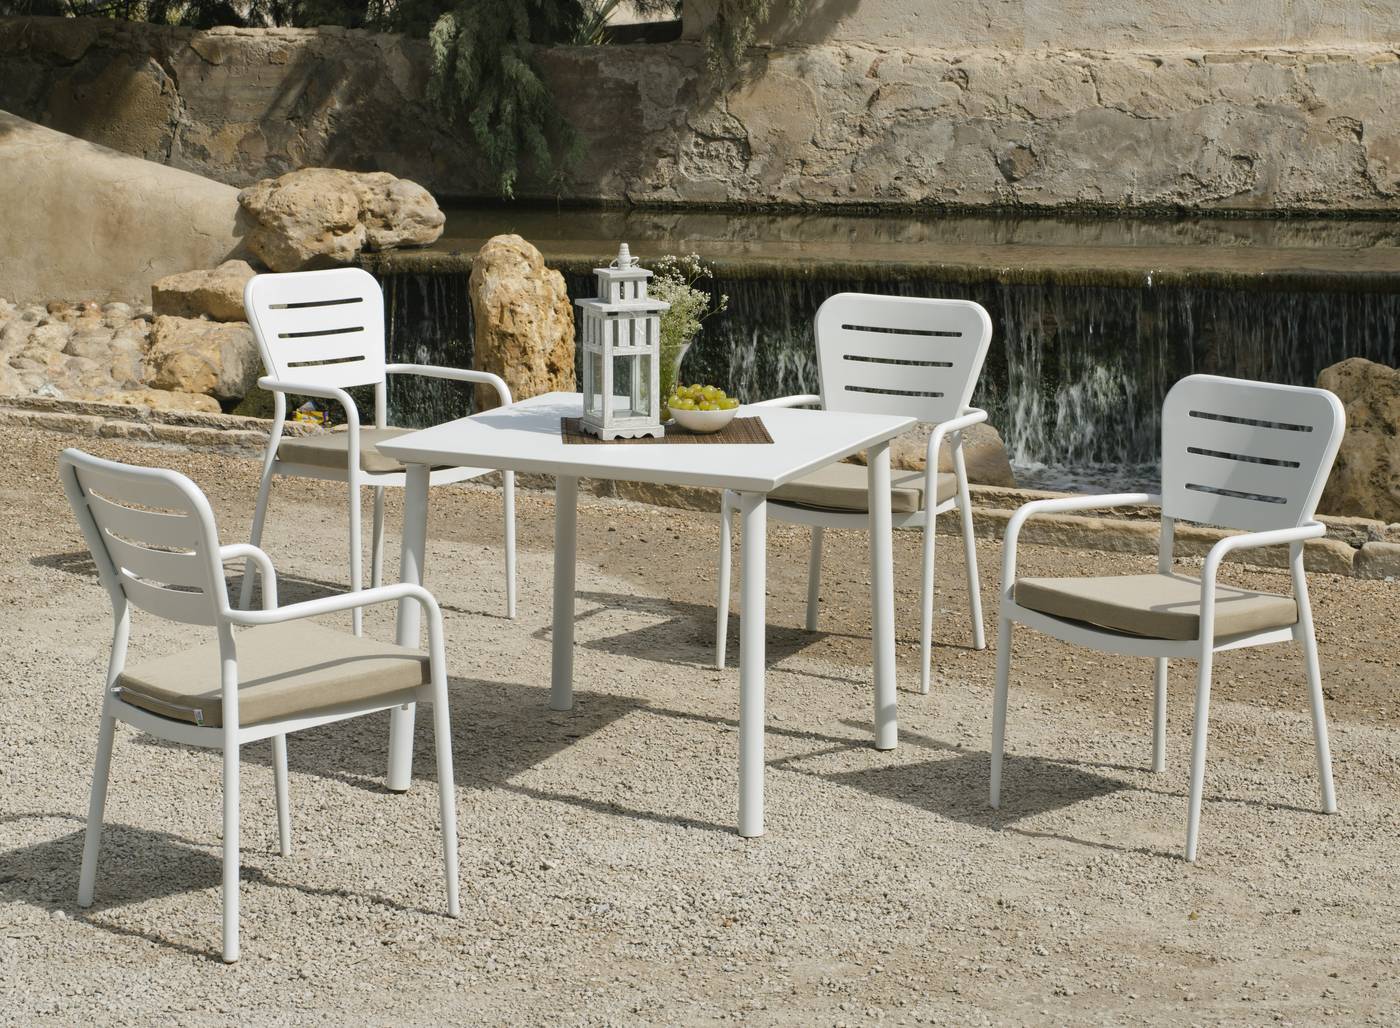 Conjunto todo aluminio color blanco: mesa cuadrada + 4 sillones